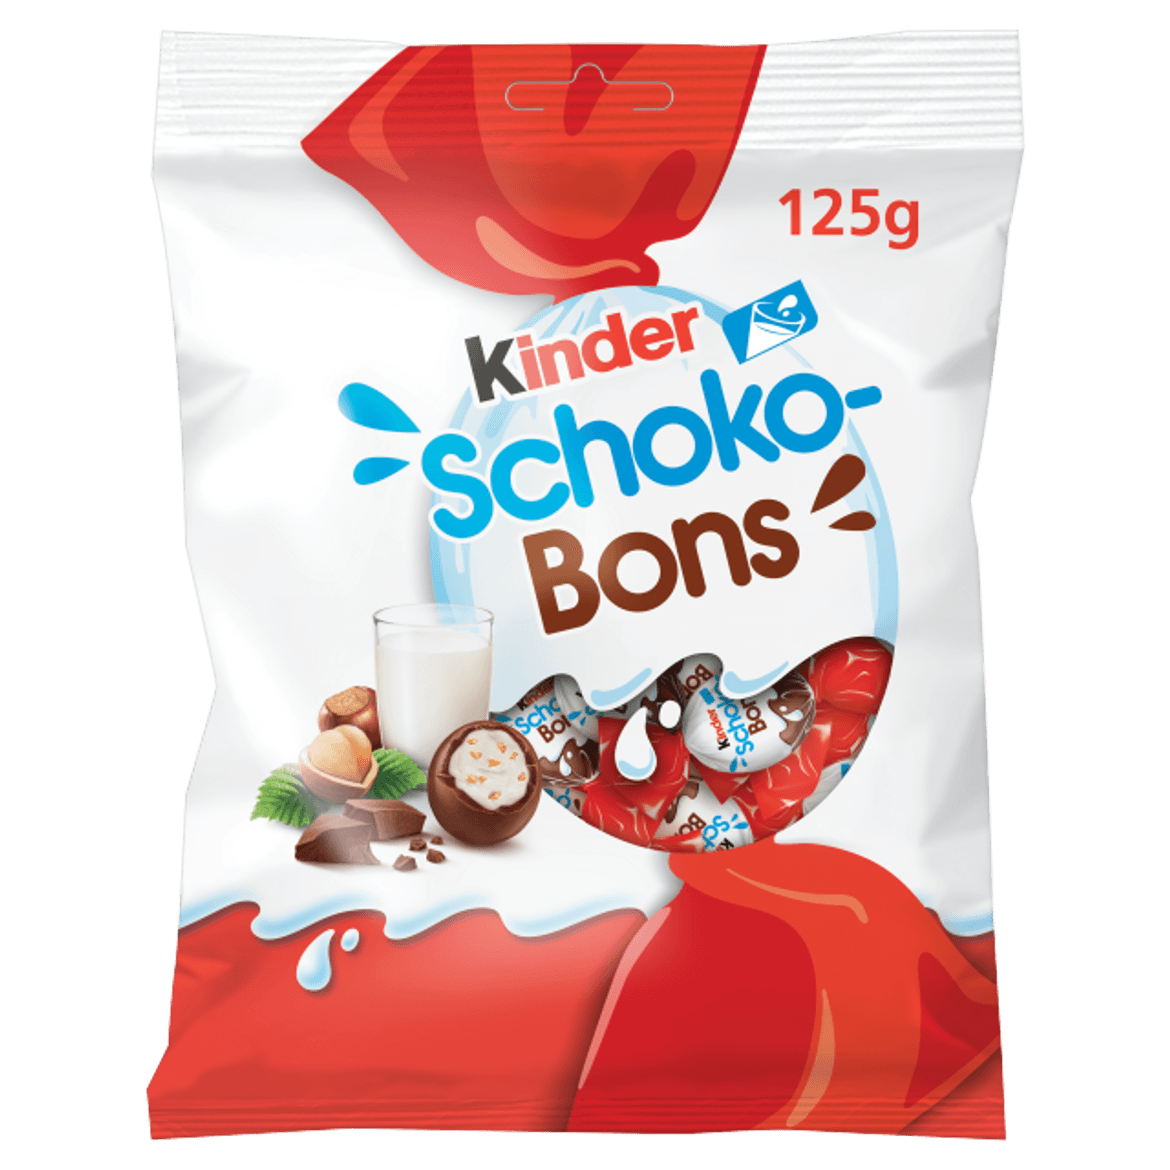 Kinder Schoko-Bons tejcsokoládé bonbonok tejes krémmel és mogyoródarabkákkal töltve